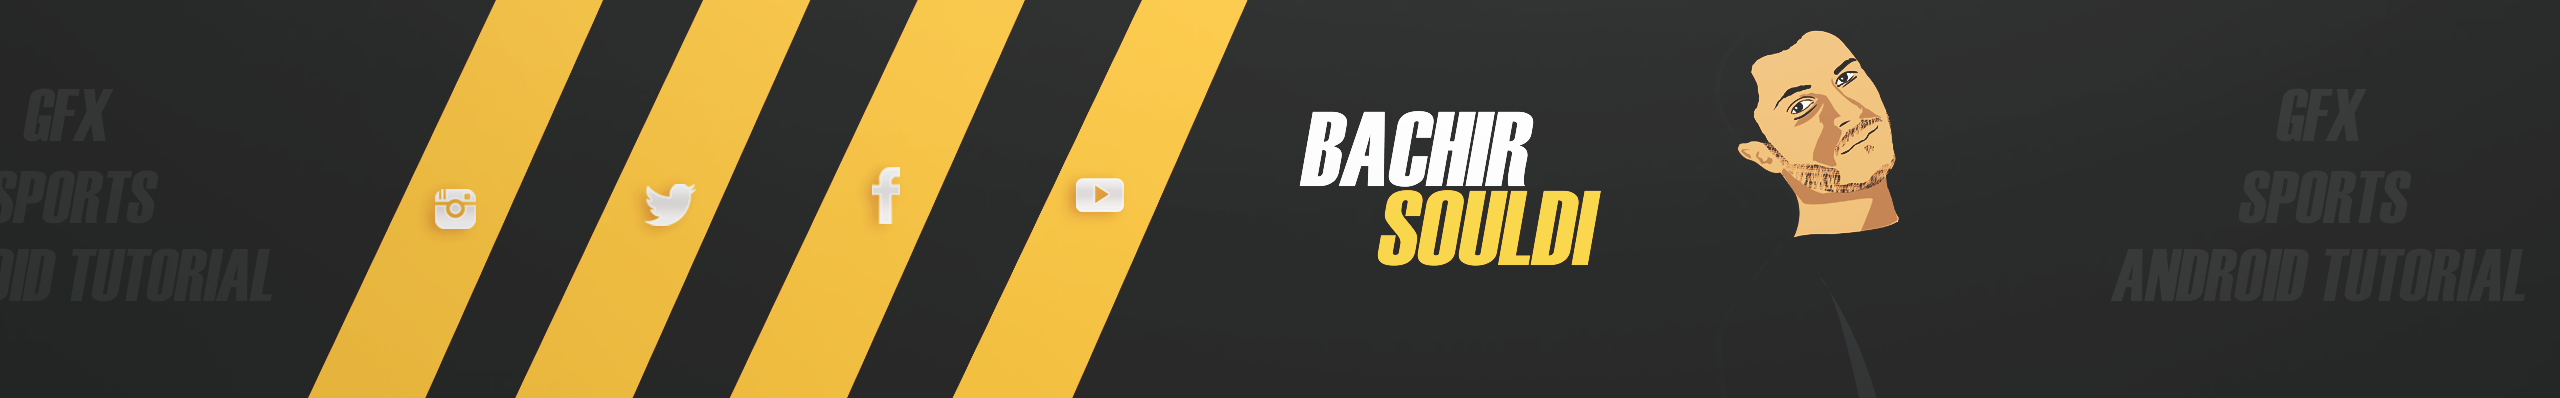 Bachir Souldi's profile banner